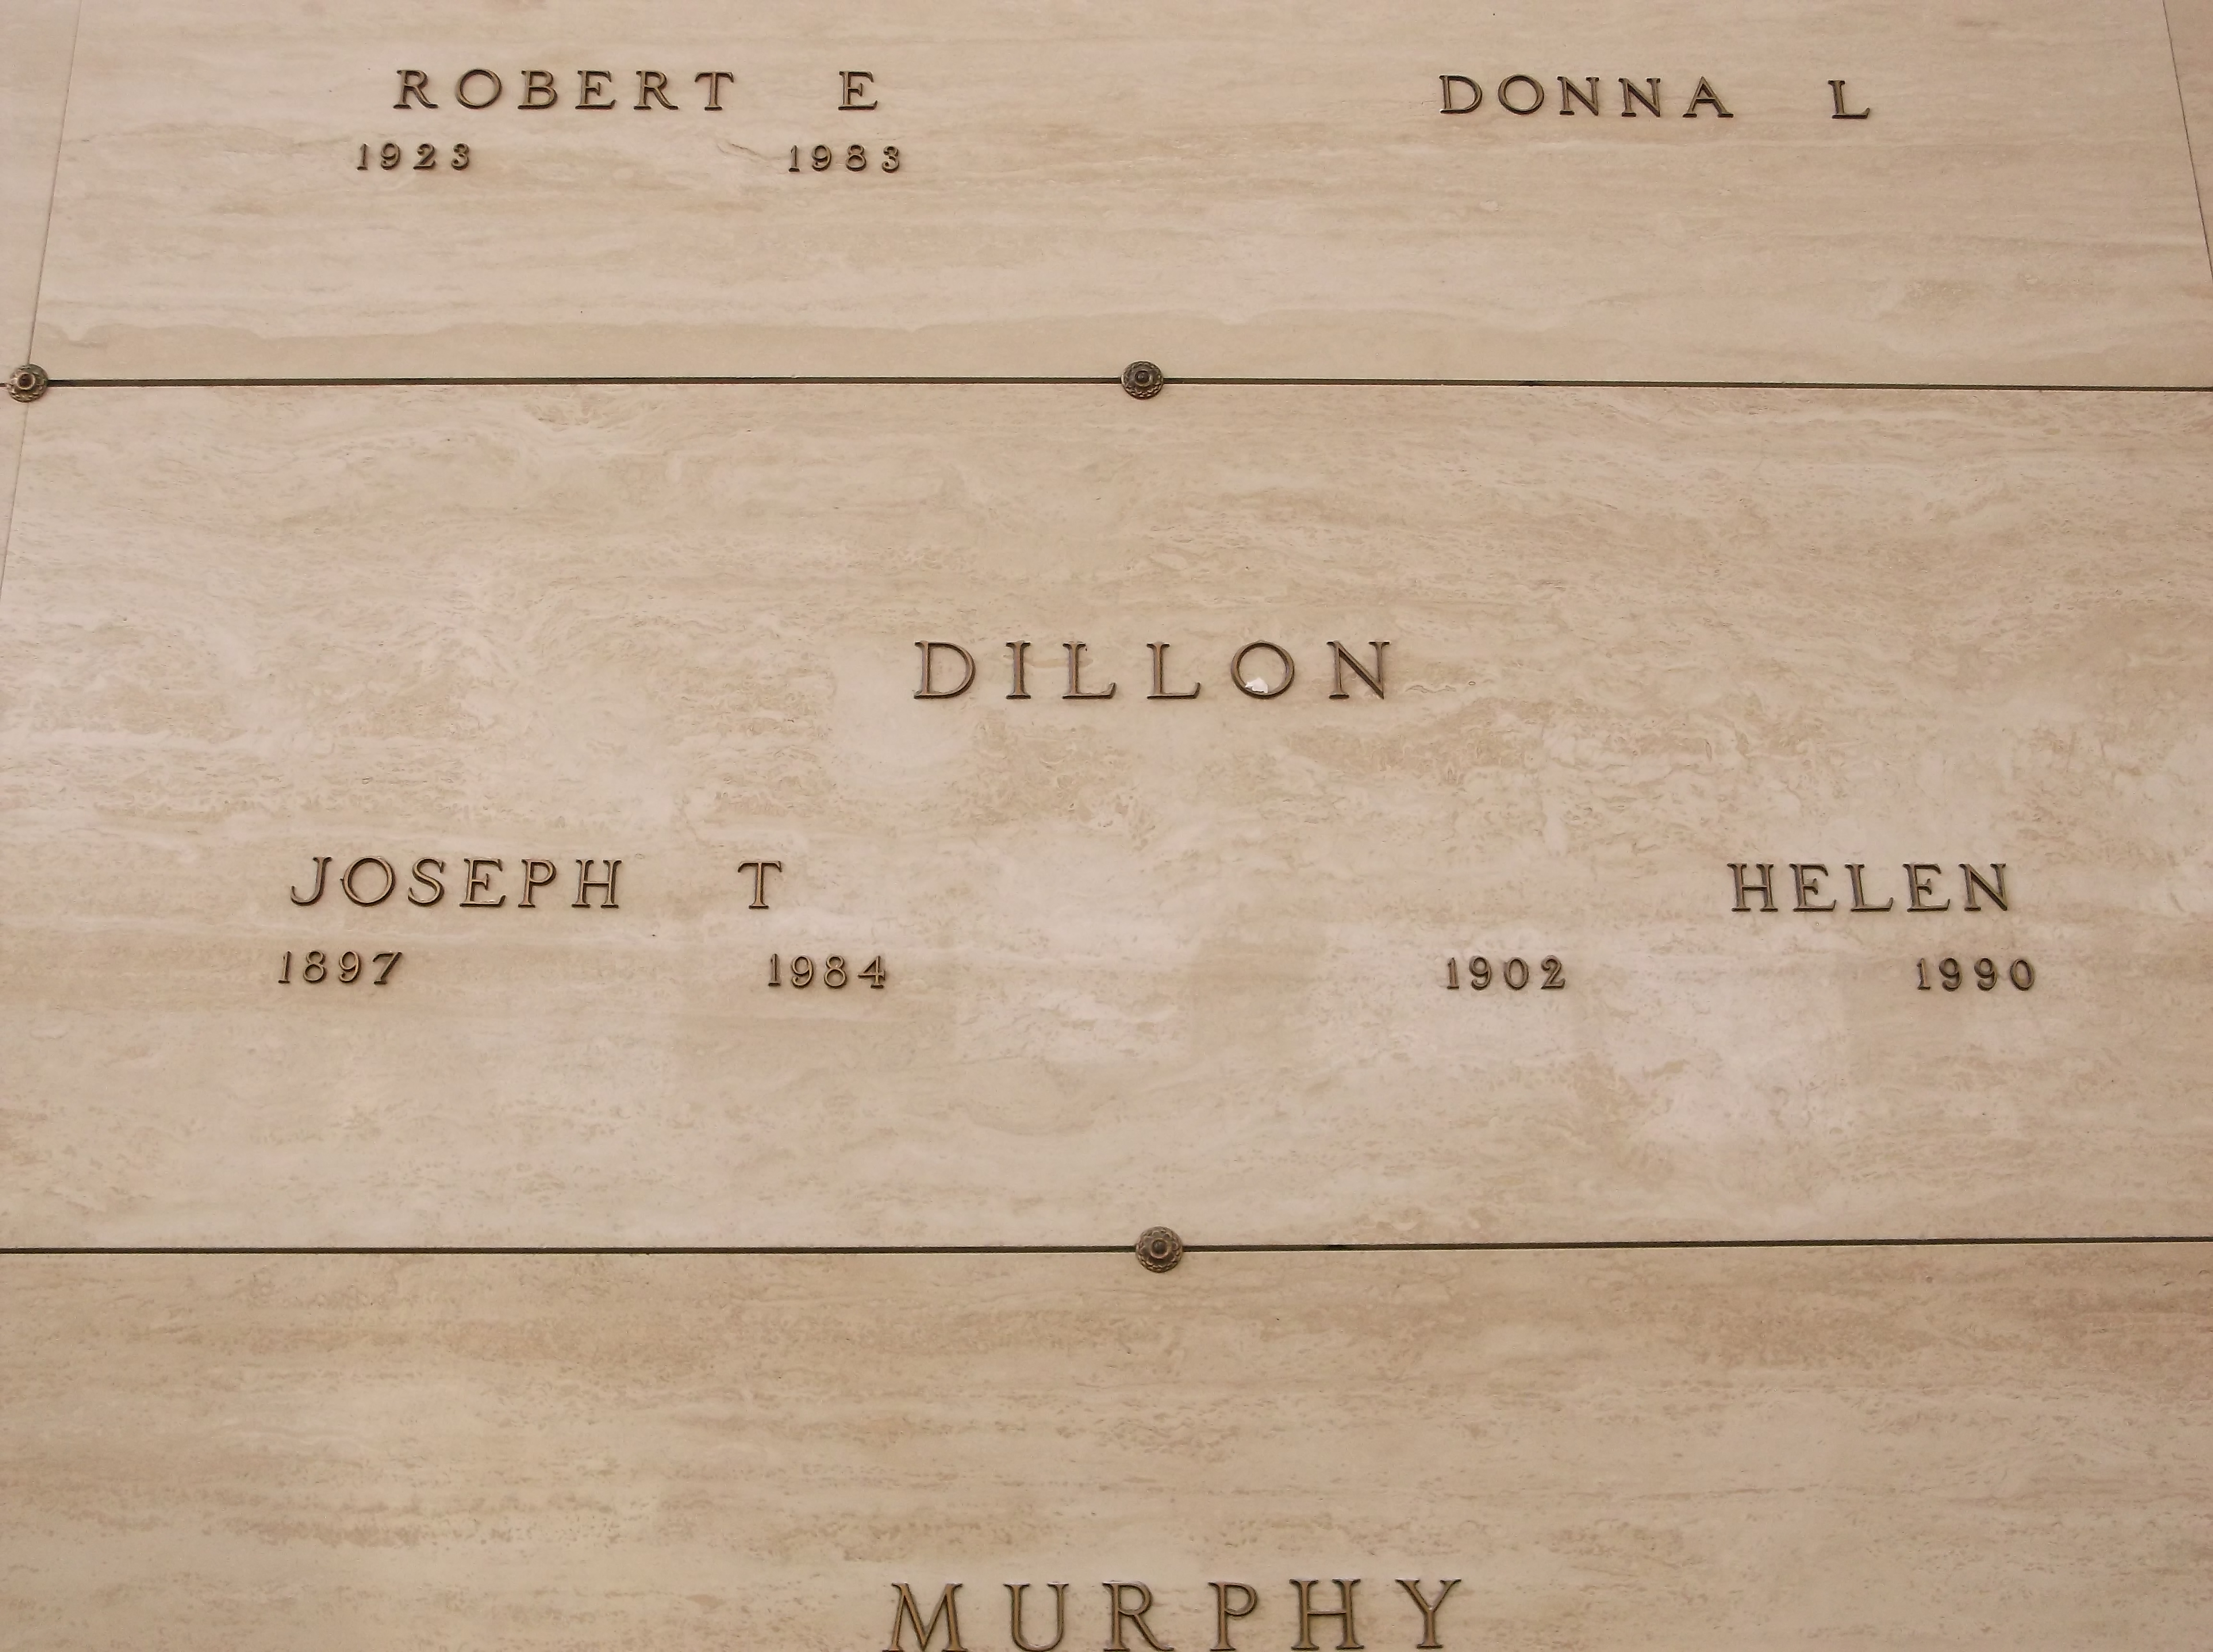 Joseph T Dillon